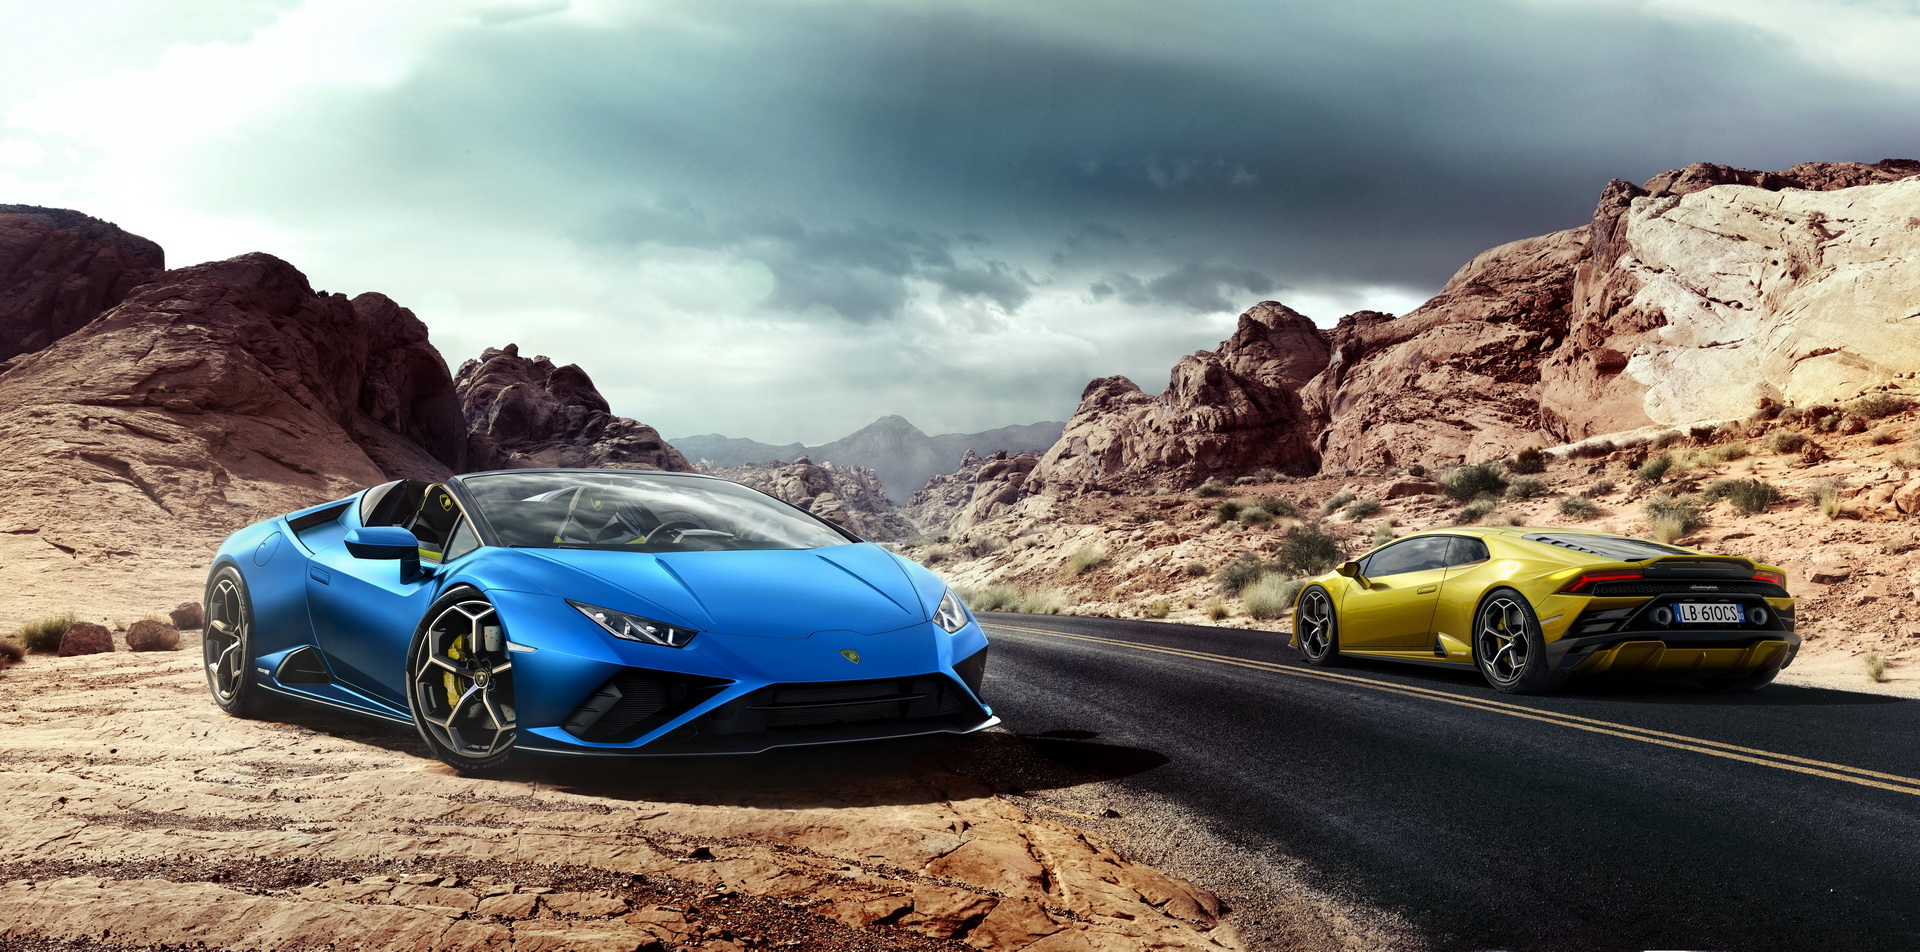 Ra mắt Lamborghini Huracan Evo RWD Spyder - Siêu xe mui trần được tinh  chỉnh cho đại gia sử dụng hàng ngày